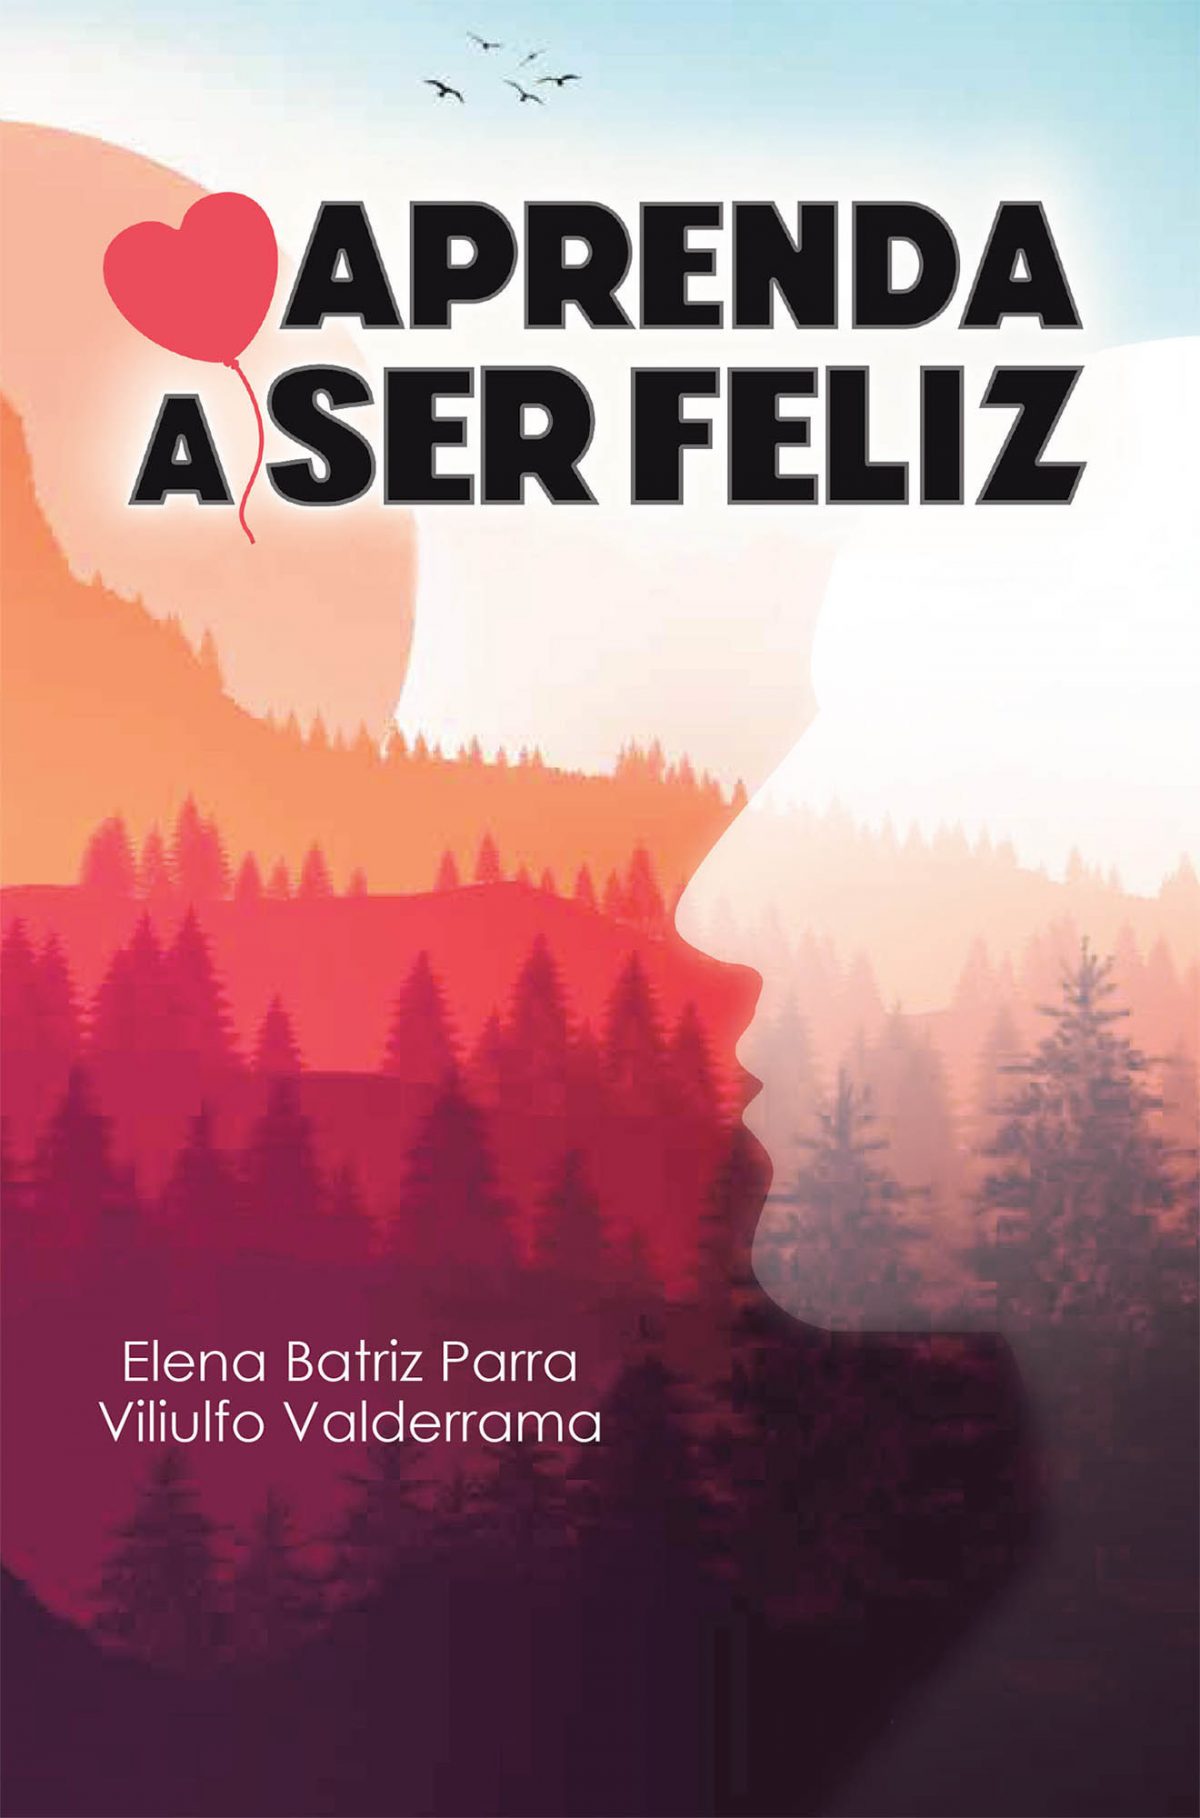 La más reciente obra publicada de los autores Elena Batriz Parra y Viliulfo Valderrama, Aprenda a ser feliz, presenta un compendio de enseñanzas que lo ayudaran a alcanzar la felicidad y satisfacción plena de su vida